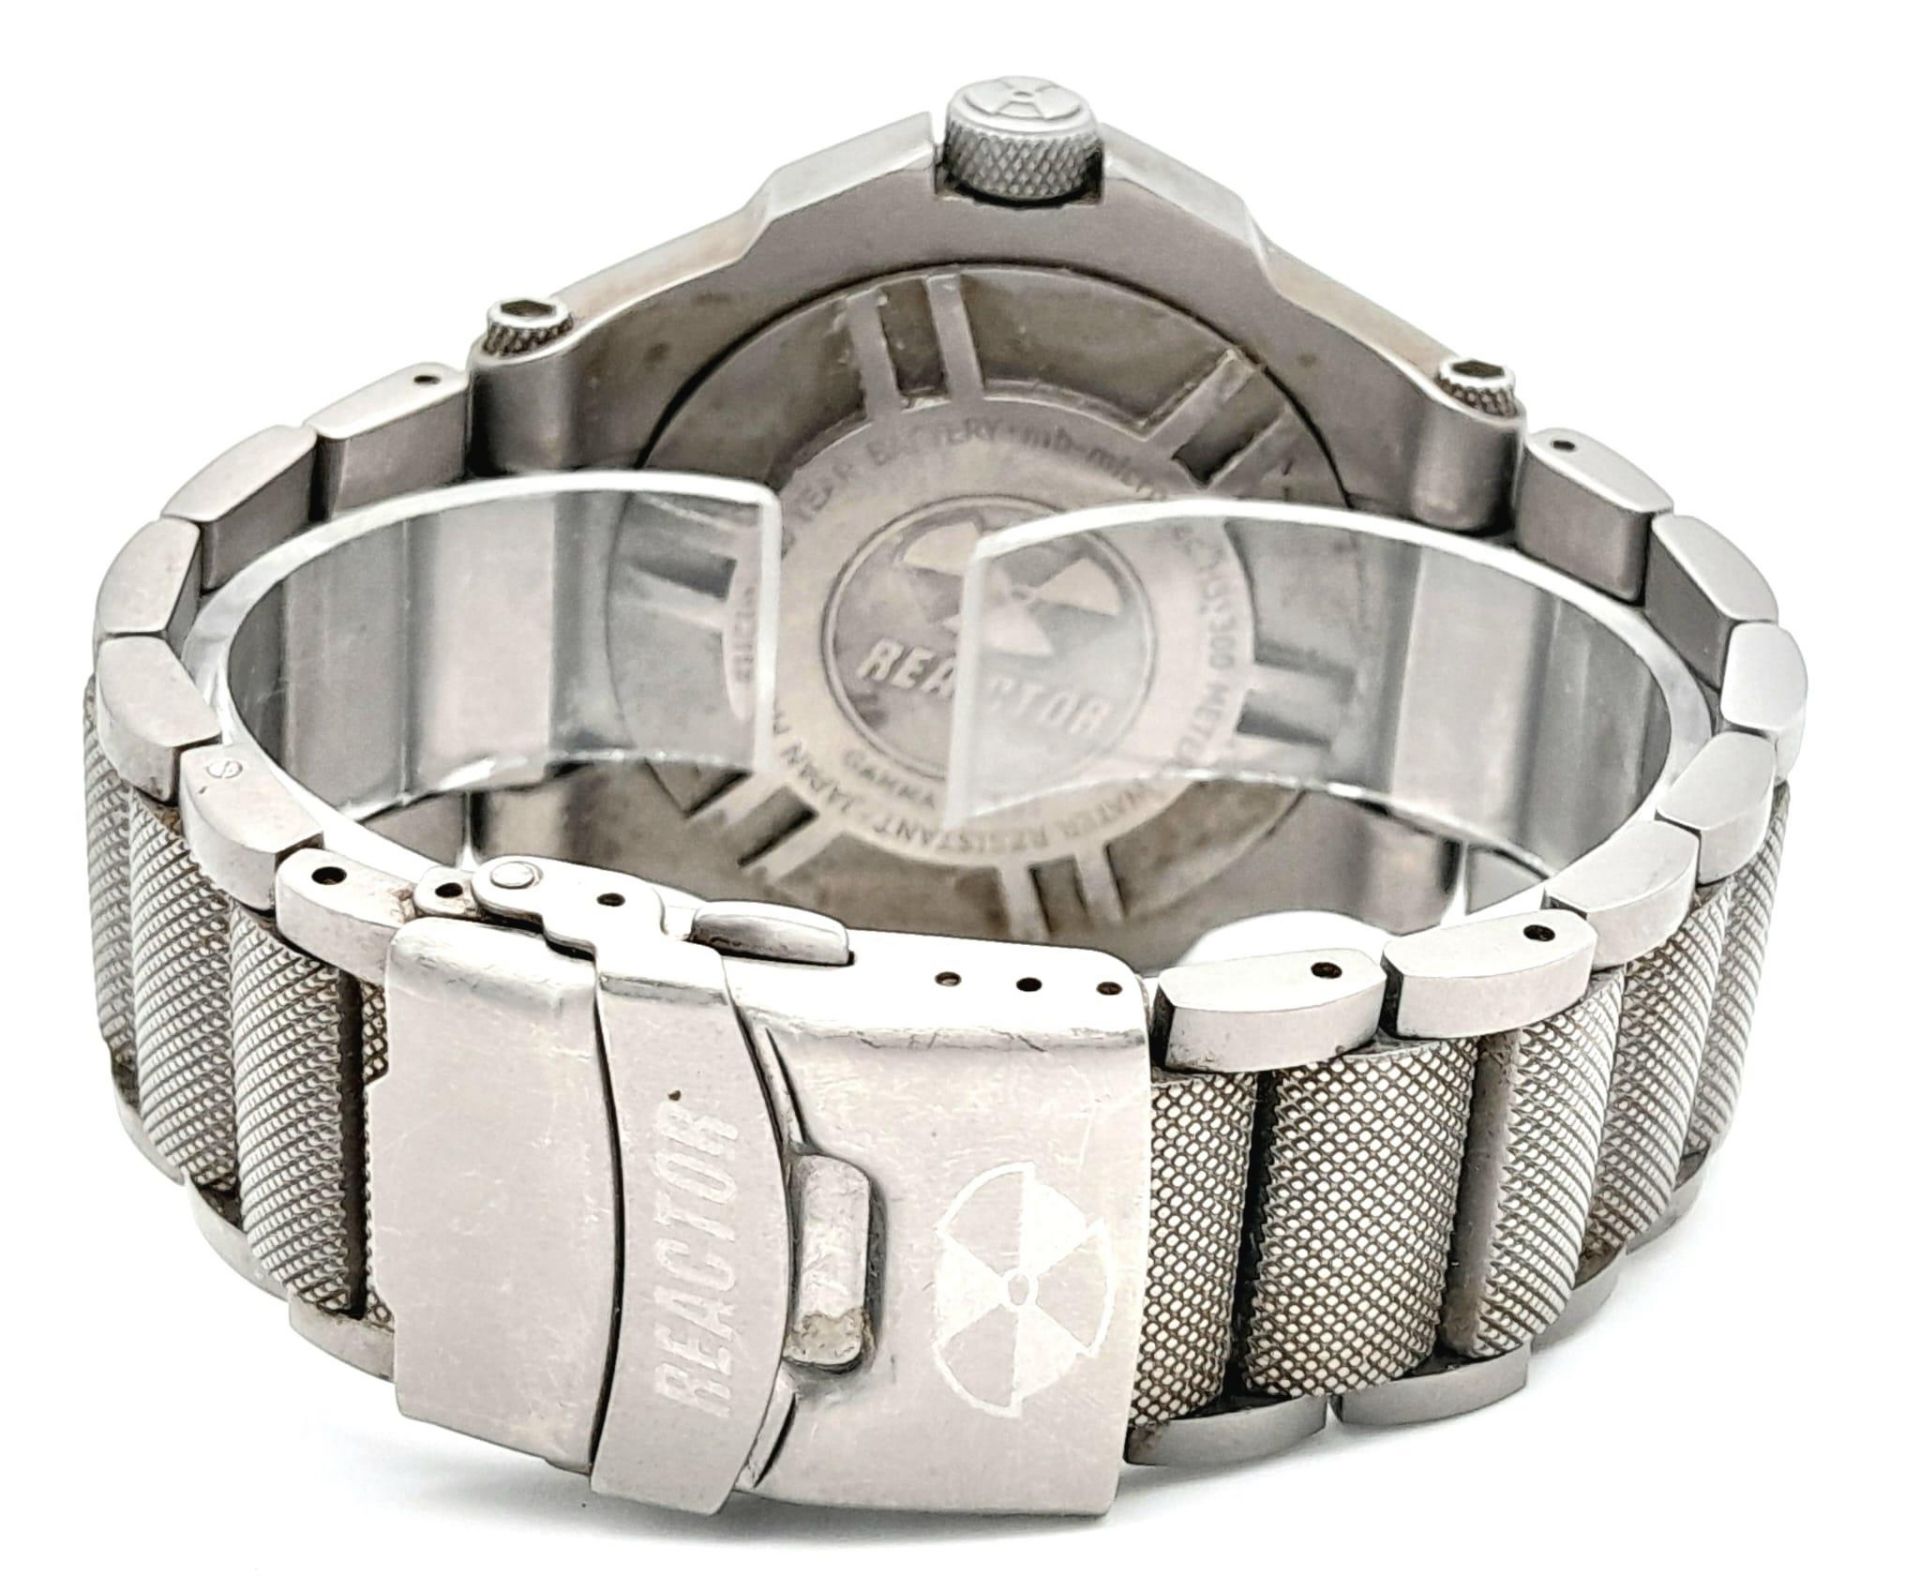 A Reactor Titanium 300M Water Resistant Quartz Gents Watch. Titanium bracelet and case - 45mm. Black - Image 4 of 5